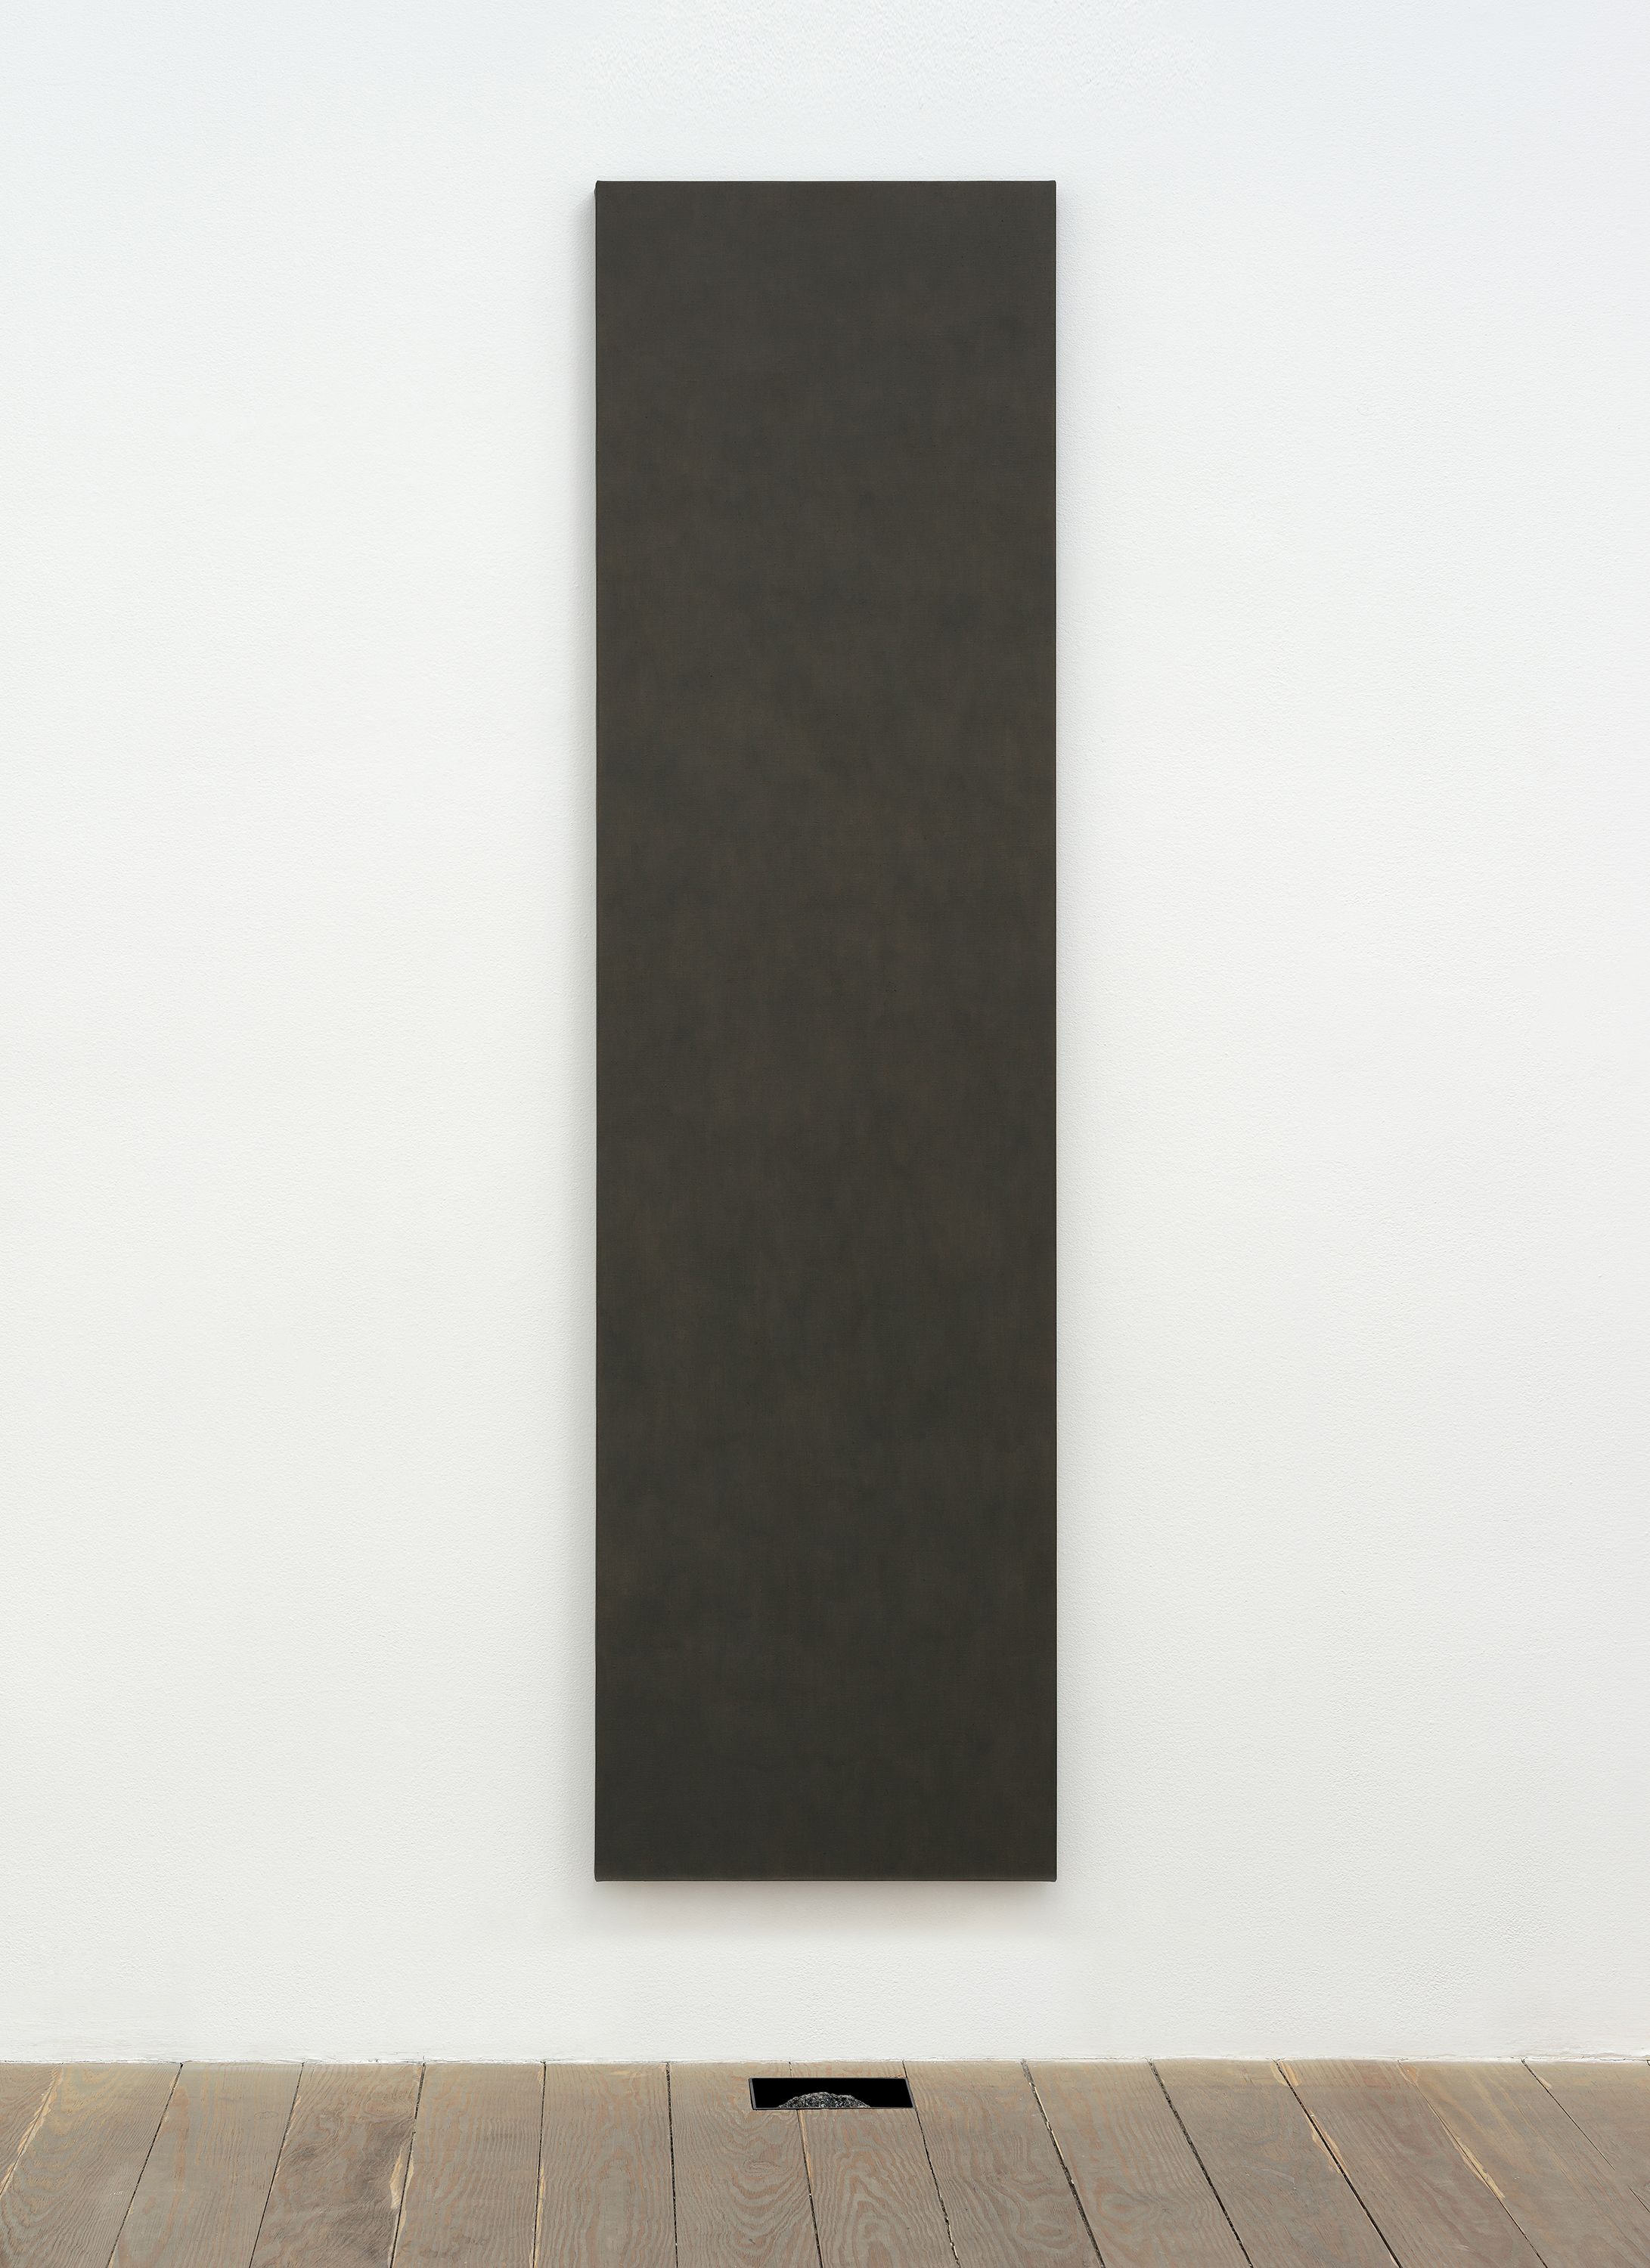 Michael Wang, New York, 2015, Manhattan schist, binder, linen, 70 x 19 and 6 7/16 x 4 1/2 x 2 7/8 in.